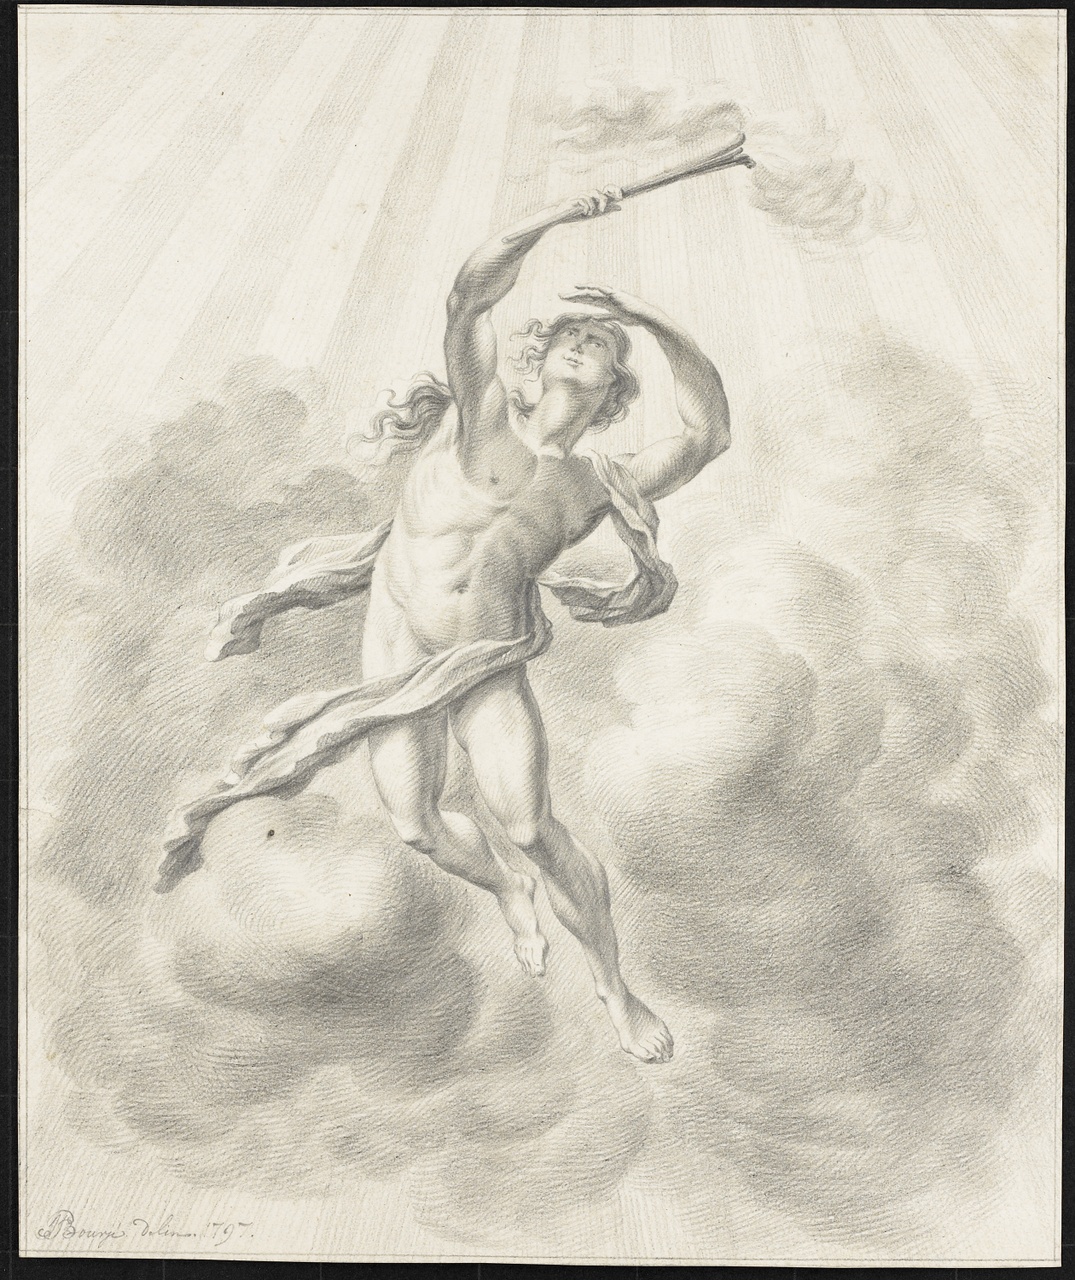 Man met toorts in wolkenlucht met stralen, Johan Pieter Bourjé